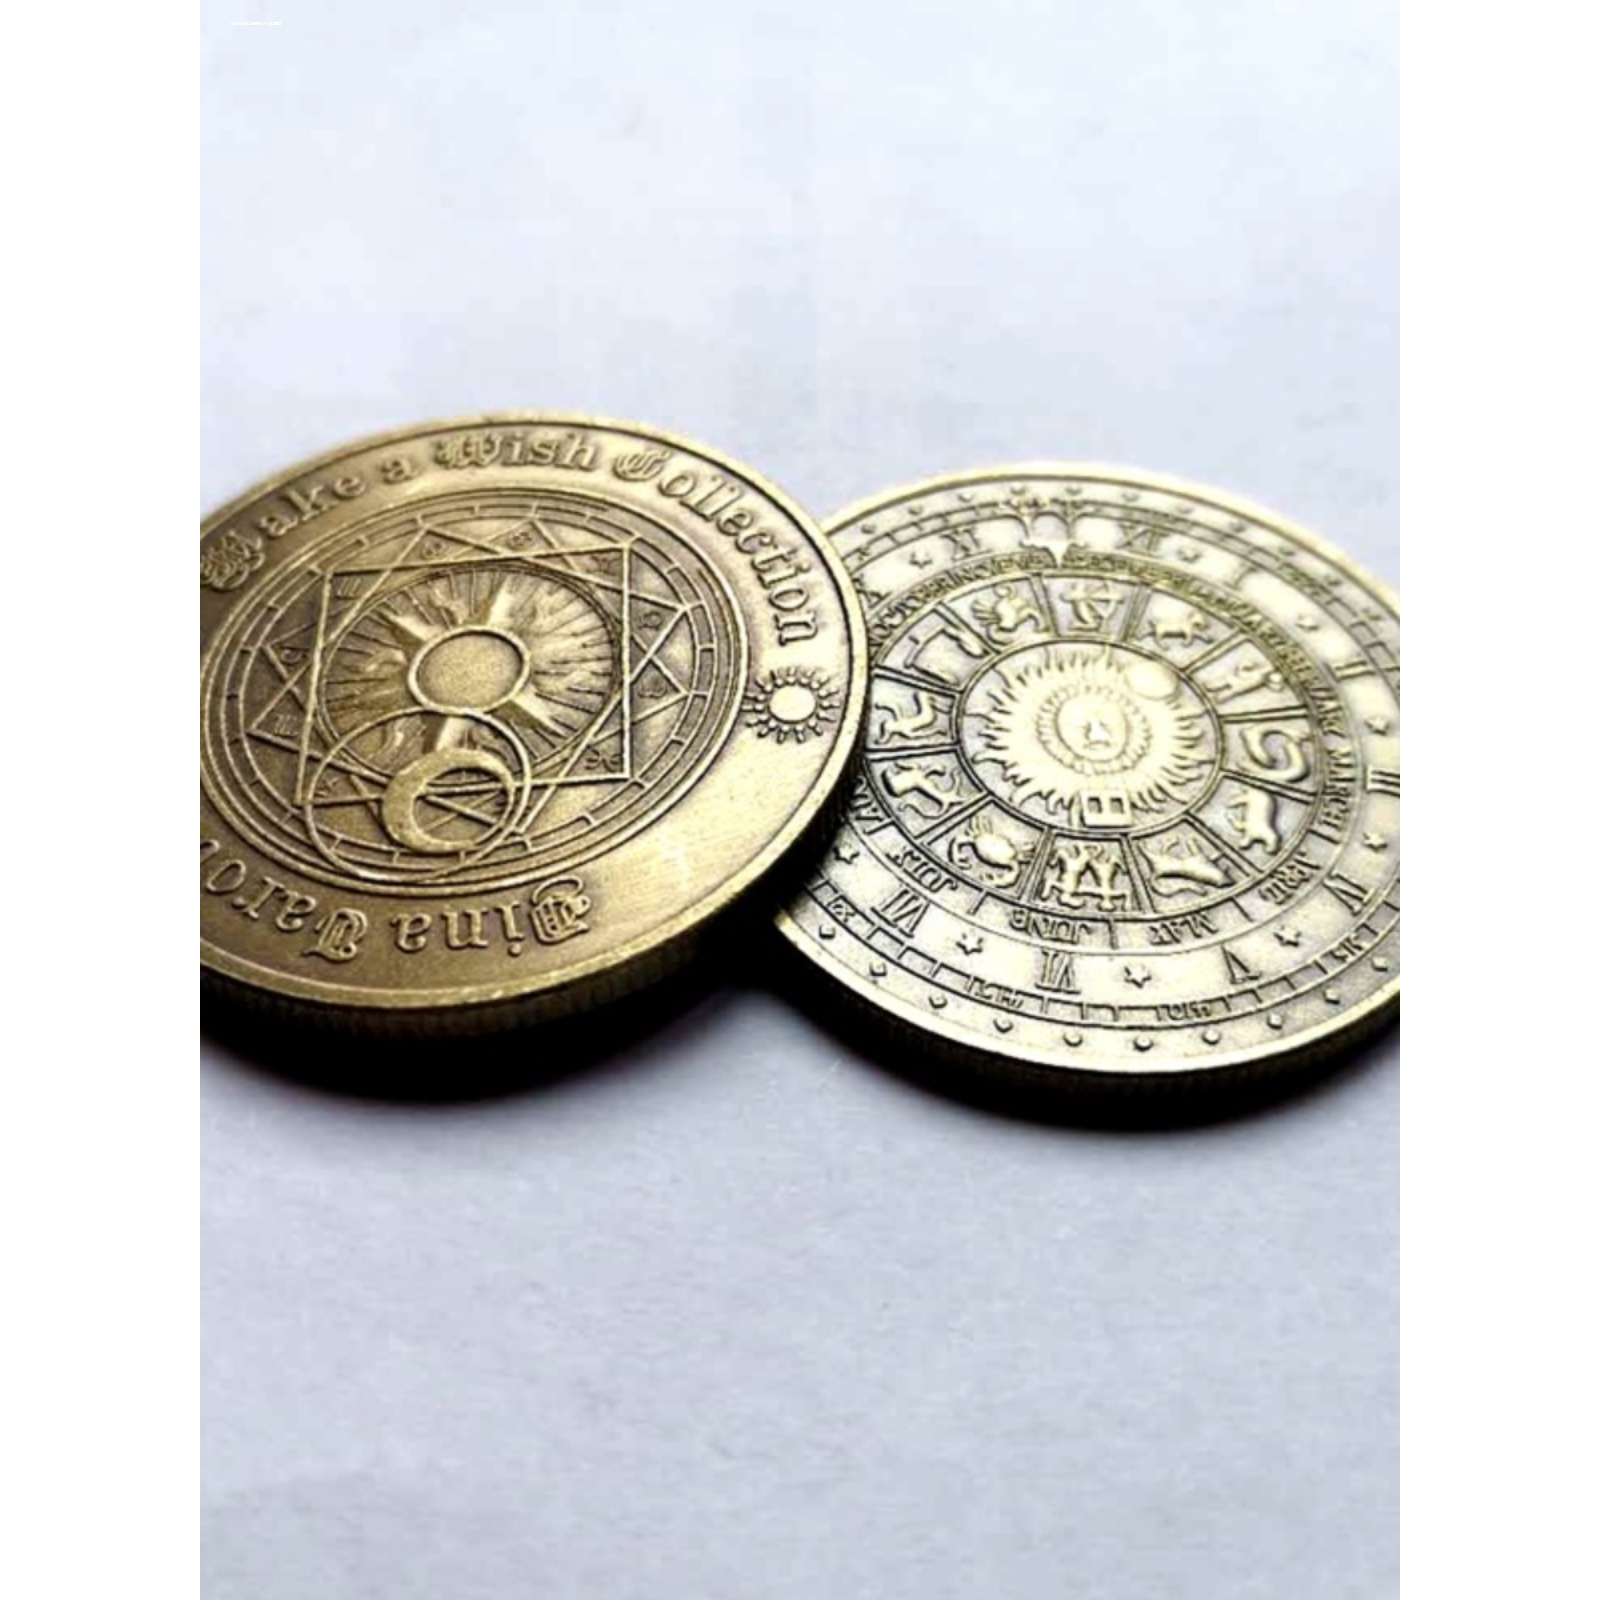 欧美生肖幸运硬币古铜色彩色纪念币爱好者小礼物热卖新款